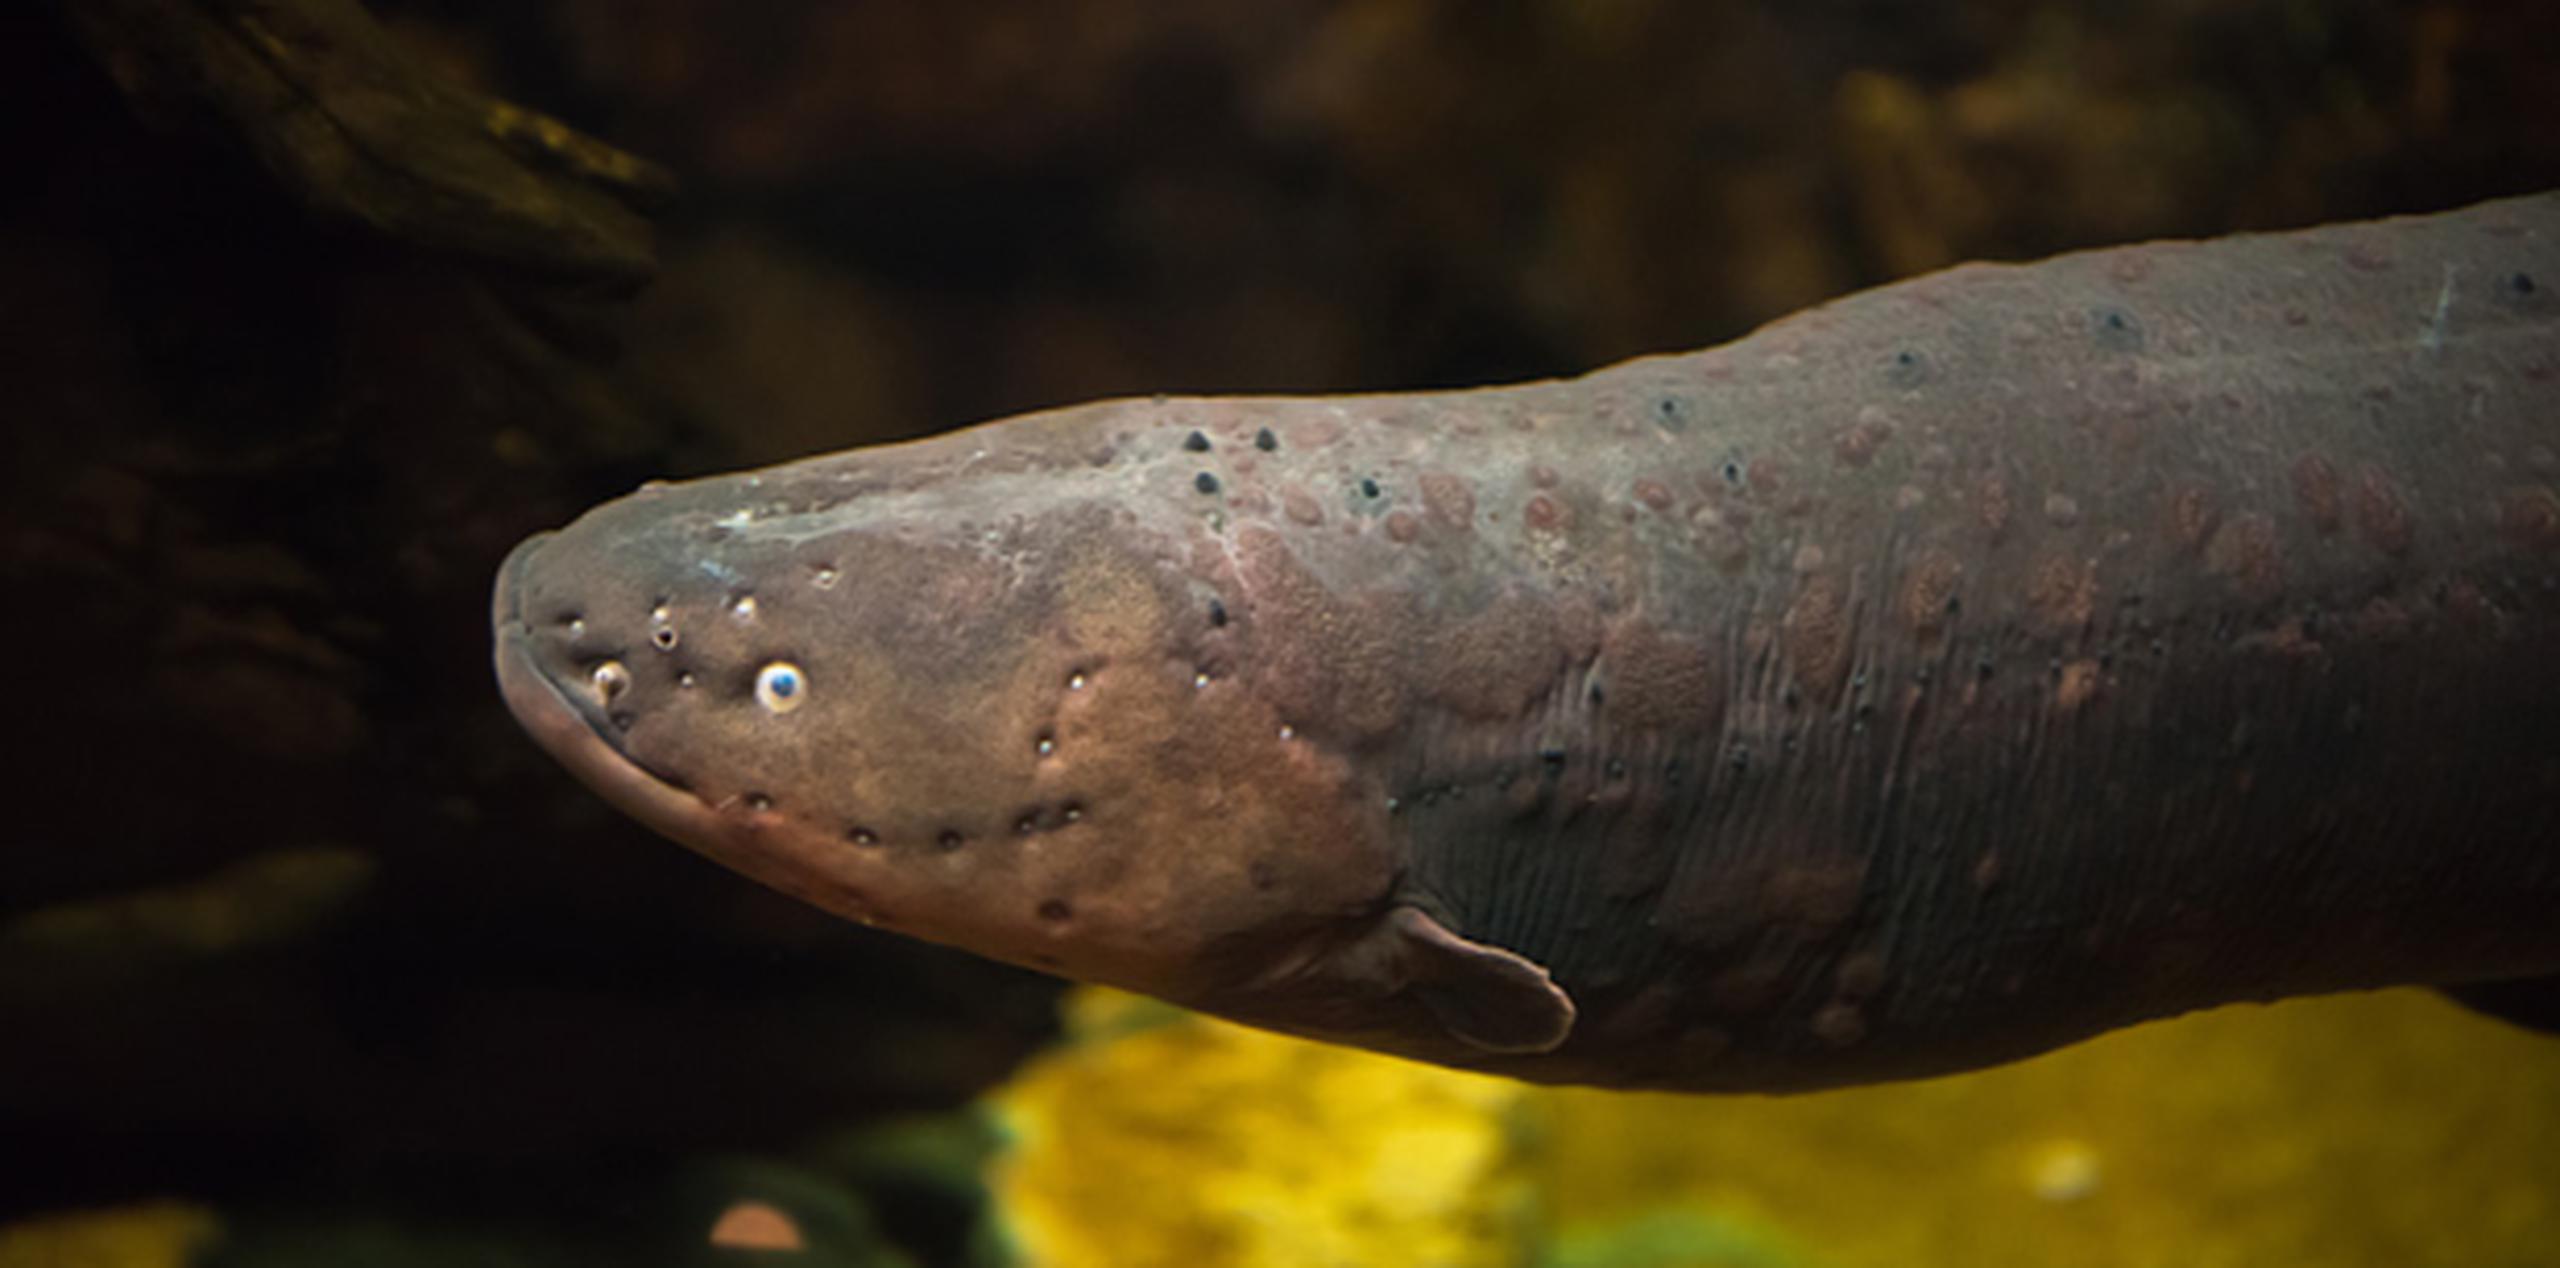 Las anguilas son muy comunes en el sur de China. (Shutterstock)